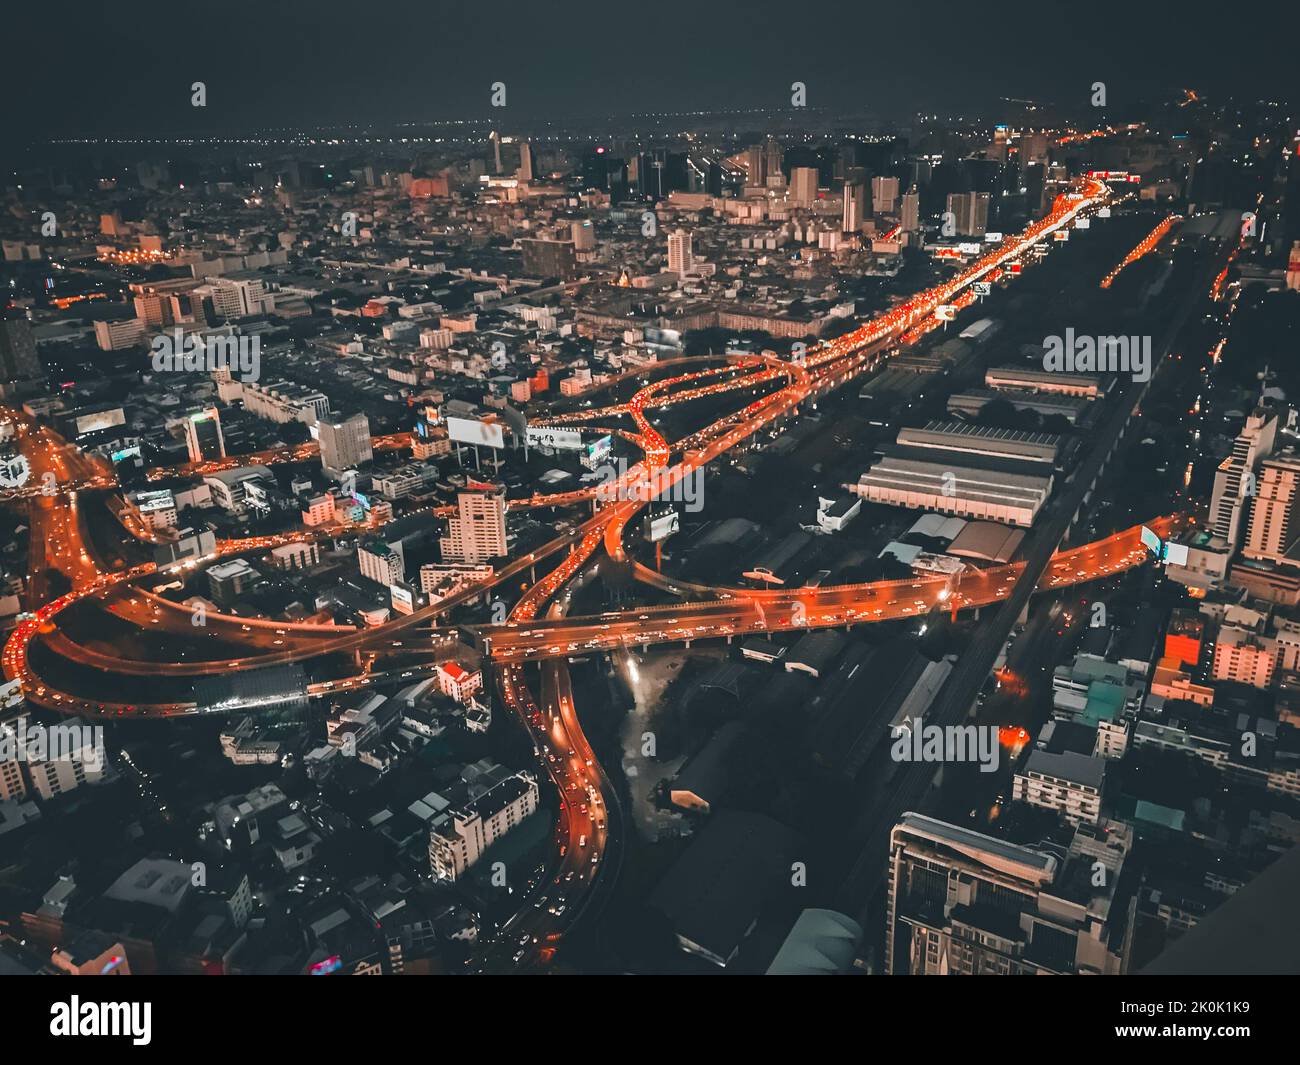 Wunderschöne Luftaufnahme des modernen städtischen Stadtzentrums mit hohen Wolkenkratzern und rot blinkenden Stadtlichtern in der Nacht. Kreuzung. Beliebtes Touristenziel Stockfoto